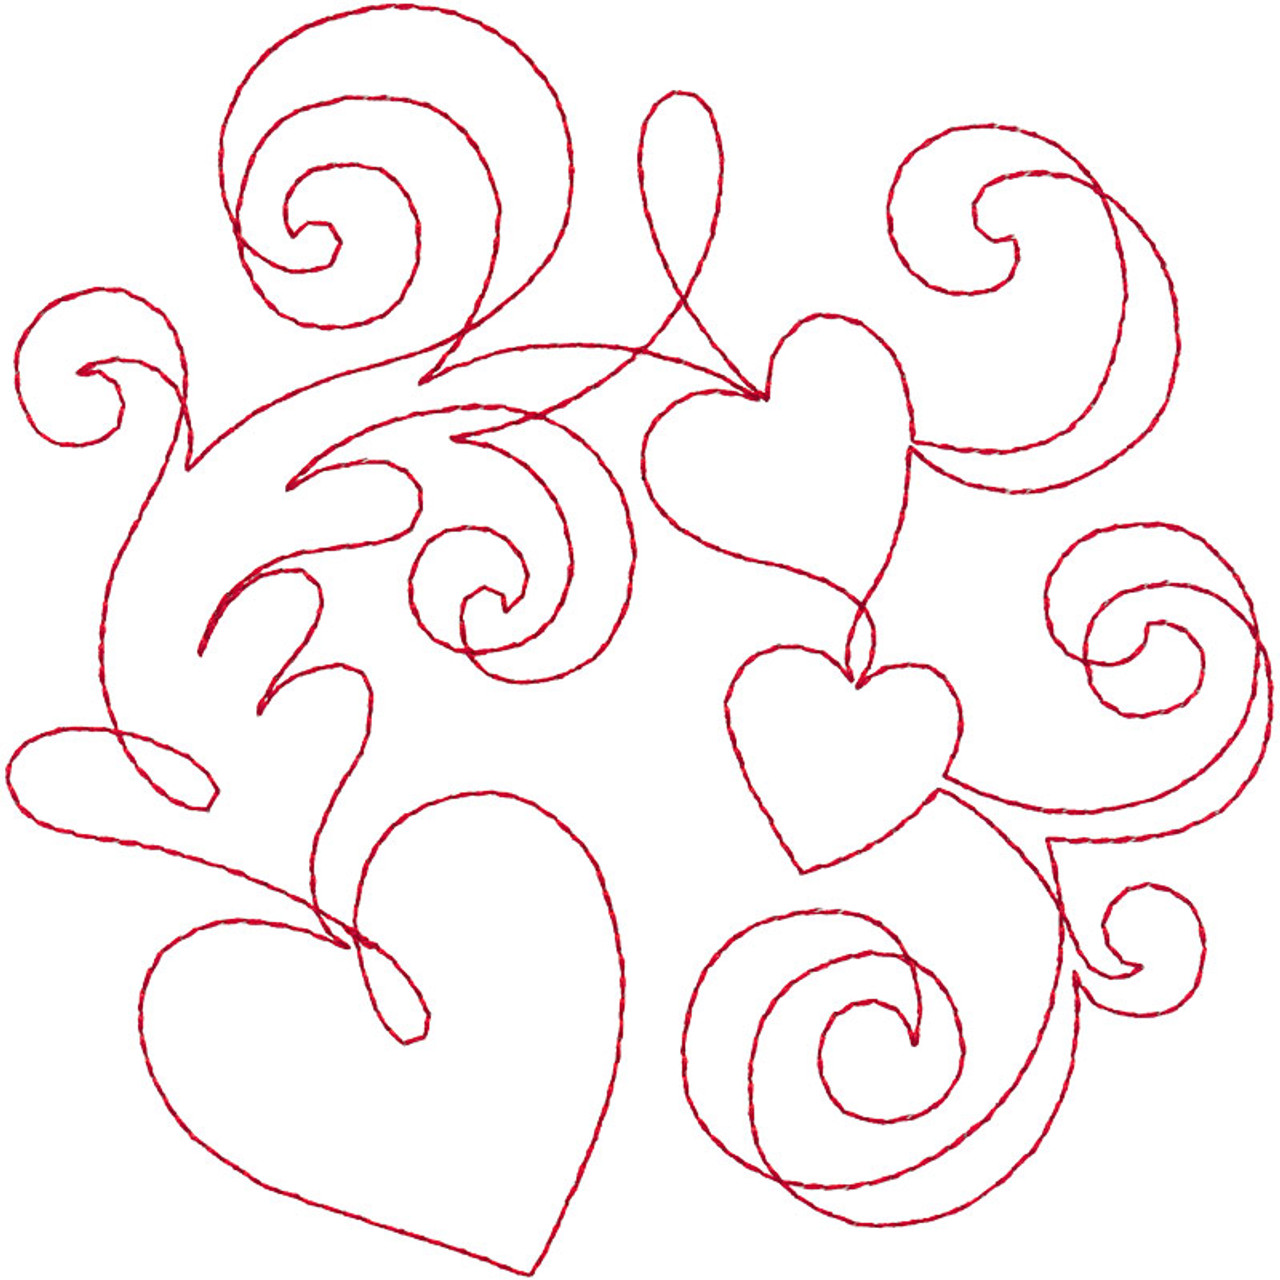 black swirl heart outline